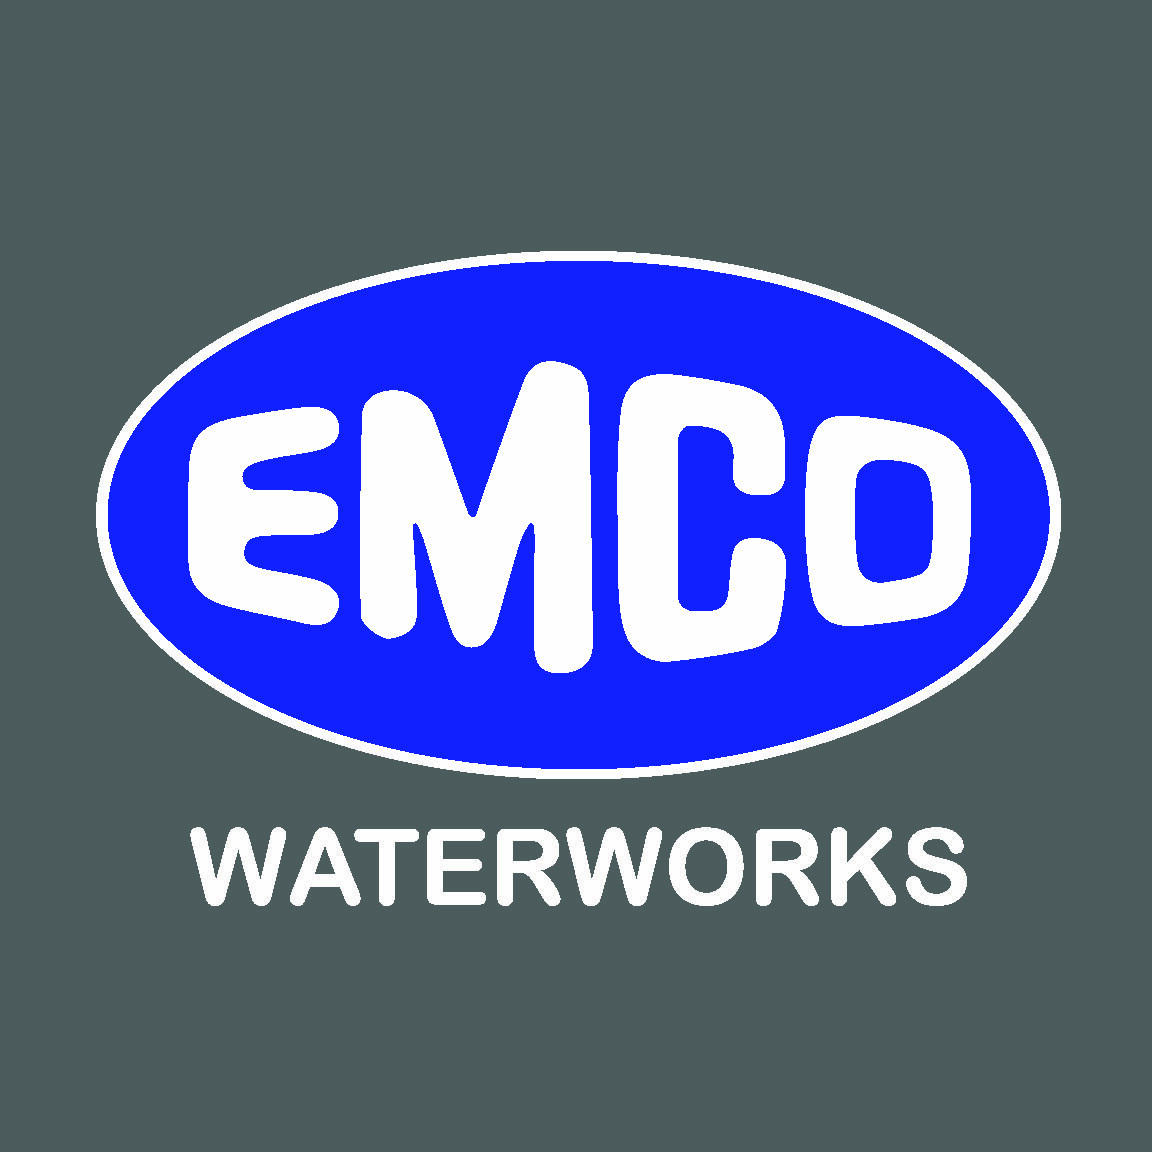 EMCO WATERWORKS